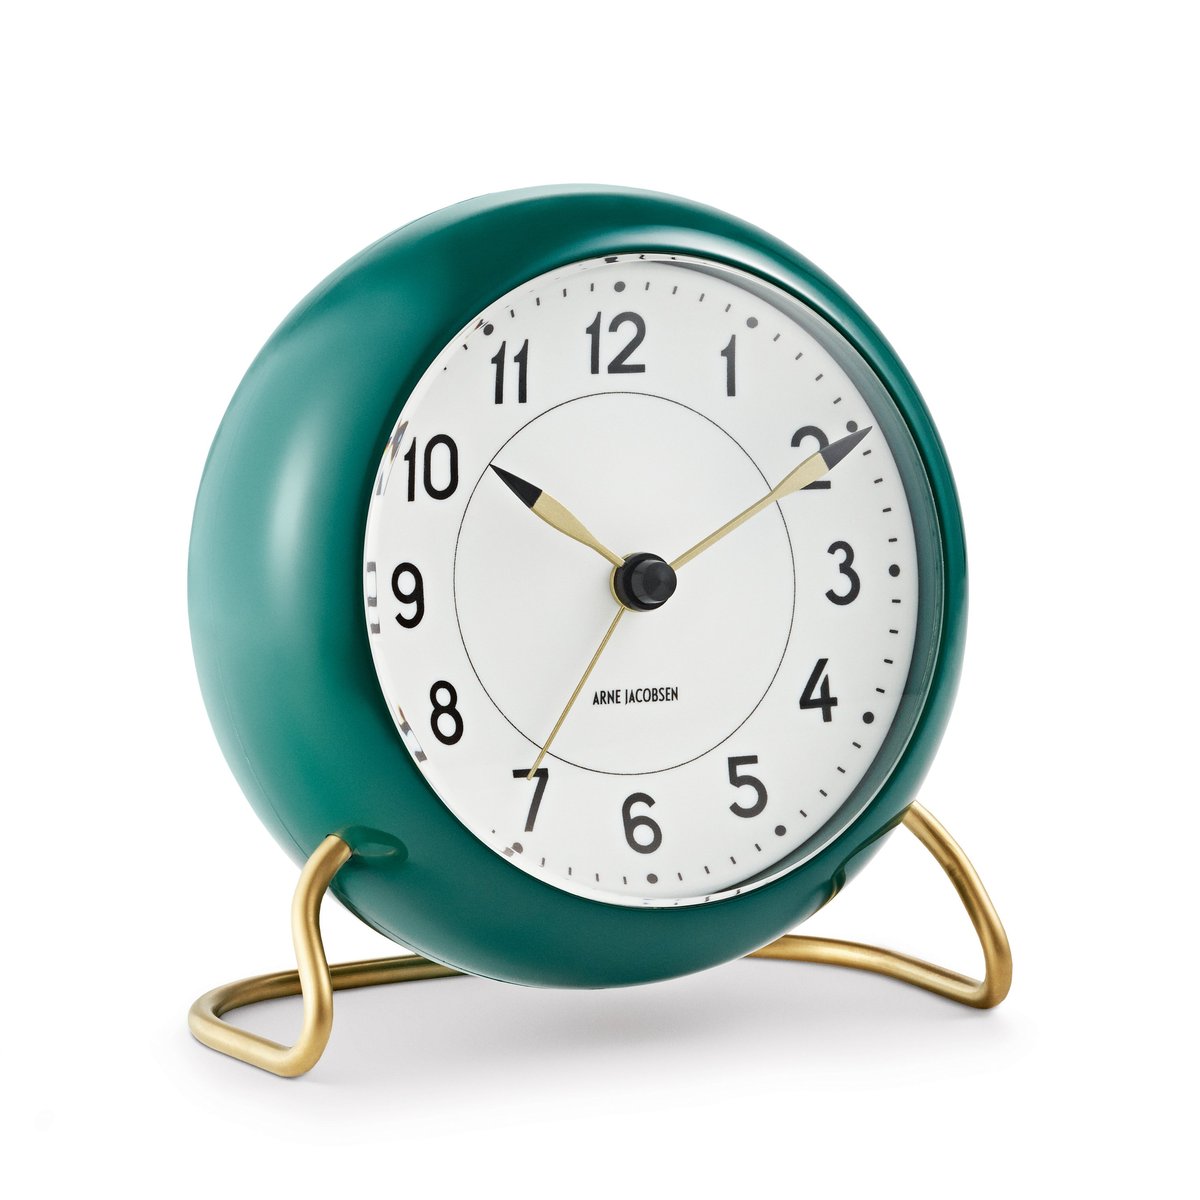 Arne Jacobsen Clocks Arne Jacobsen tafelklok groen groen